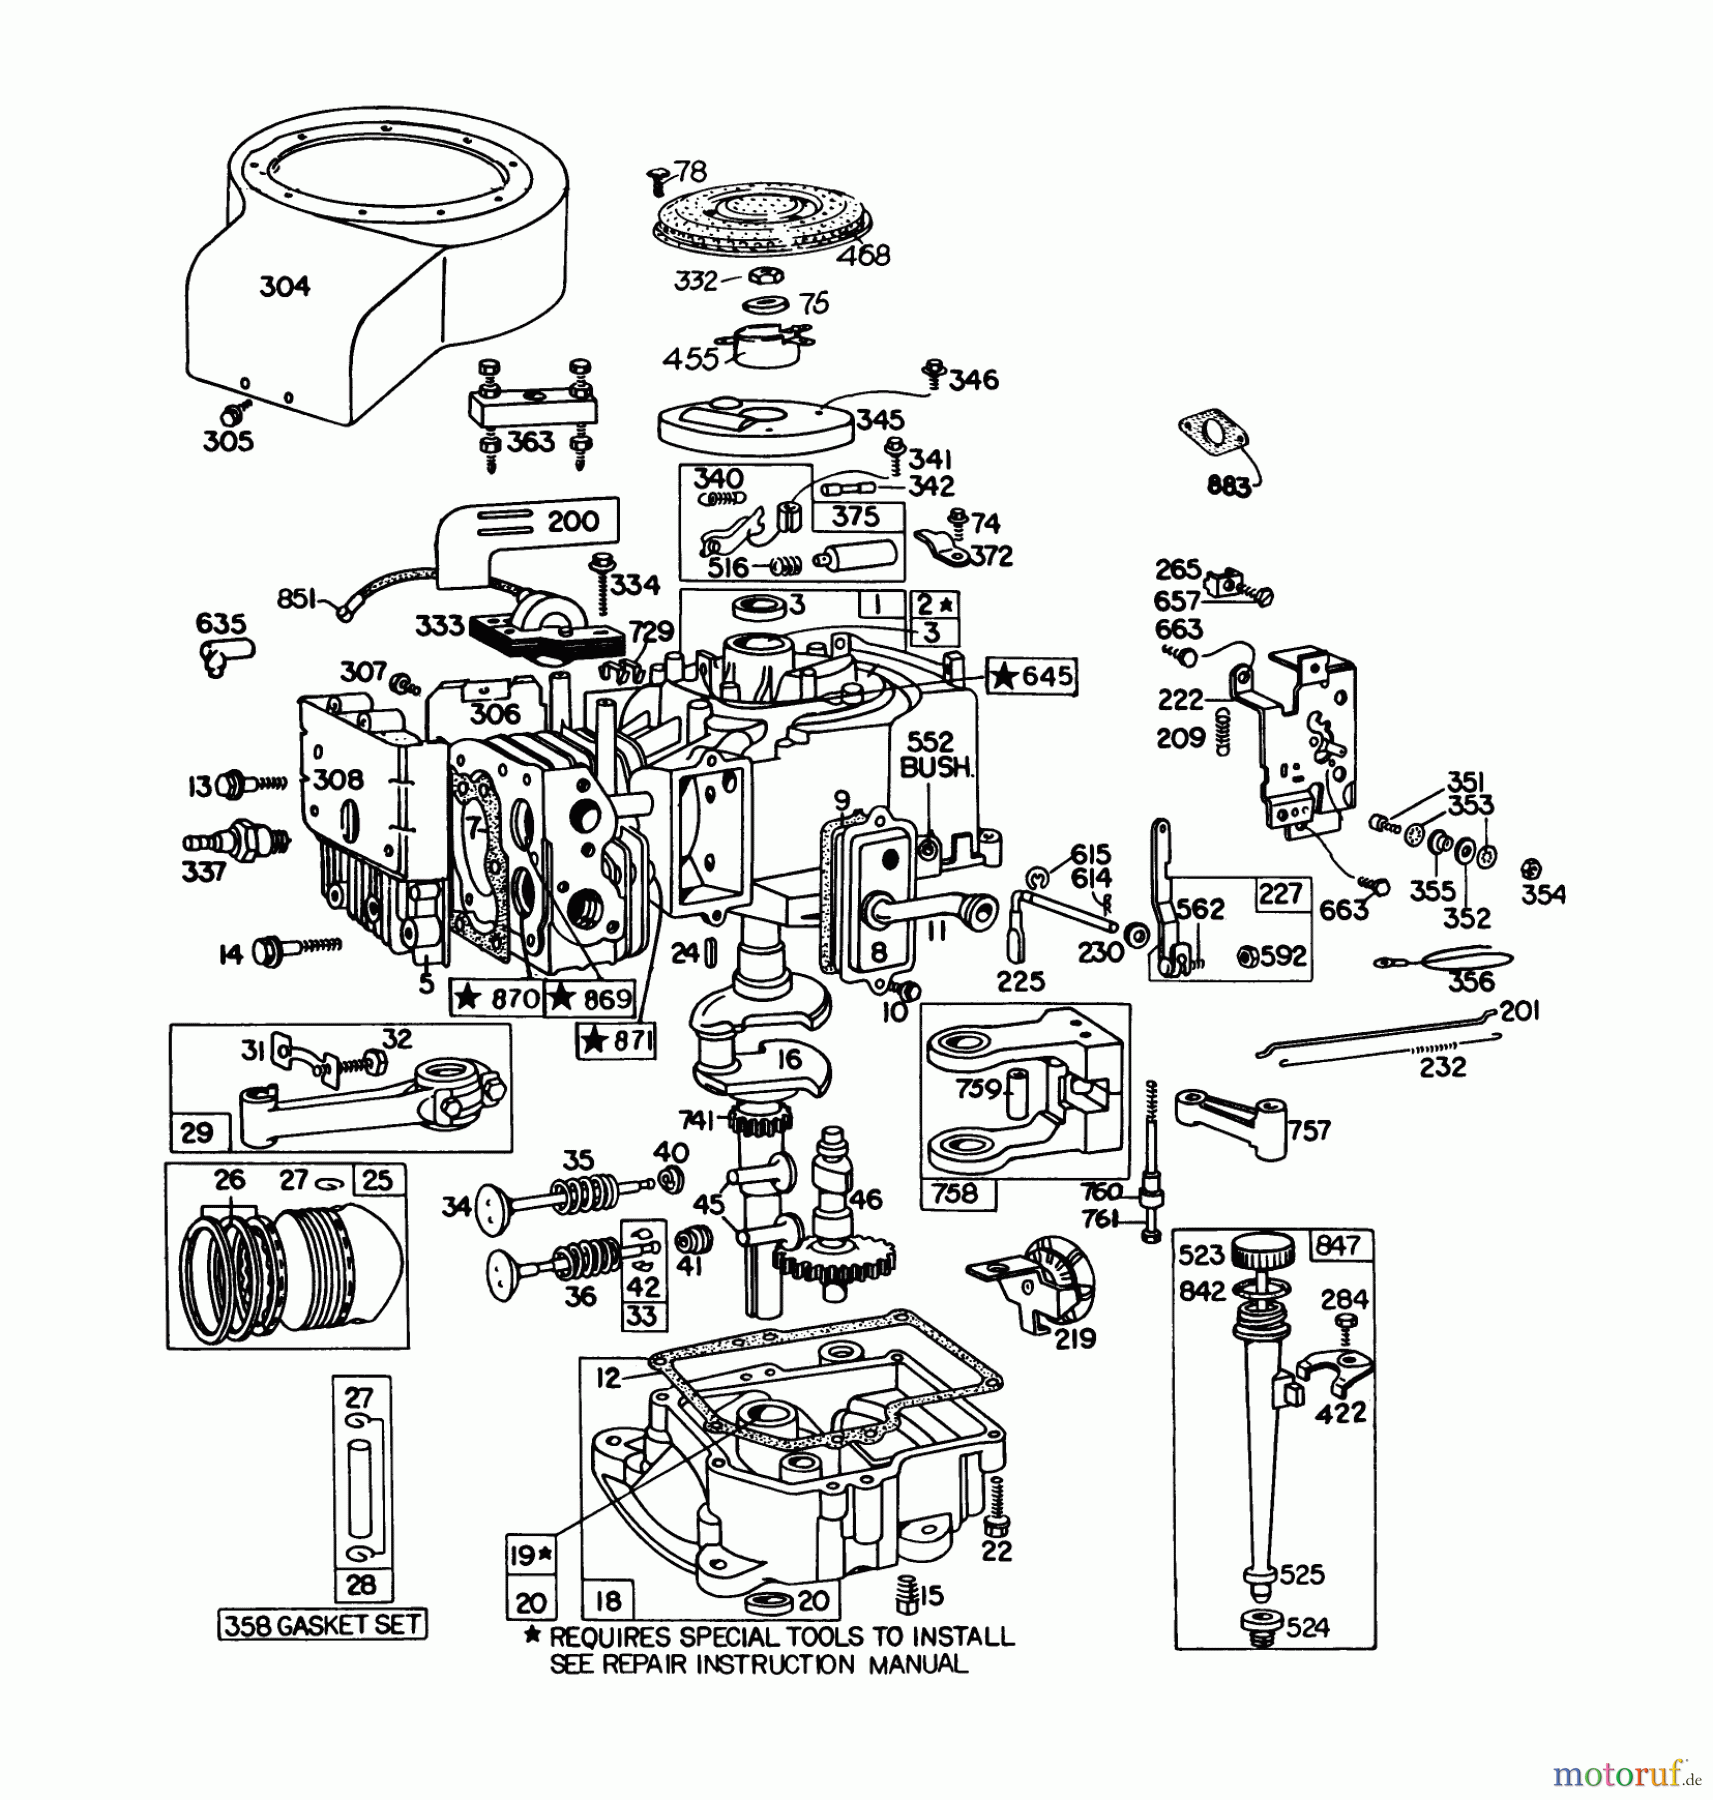  Toro Neu Mowers, Lawn & Garden Tractor Seite 1 57300 (8-32) - Toro 8-32 Front Engine Rider, 1979 (9000001-9999999) ENGINE BRIGGS & STRATTON MODEL 191707-5641-01 (MODEL 57300)